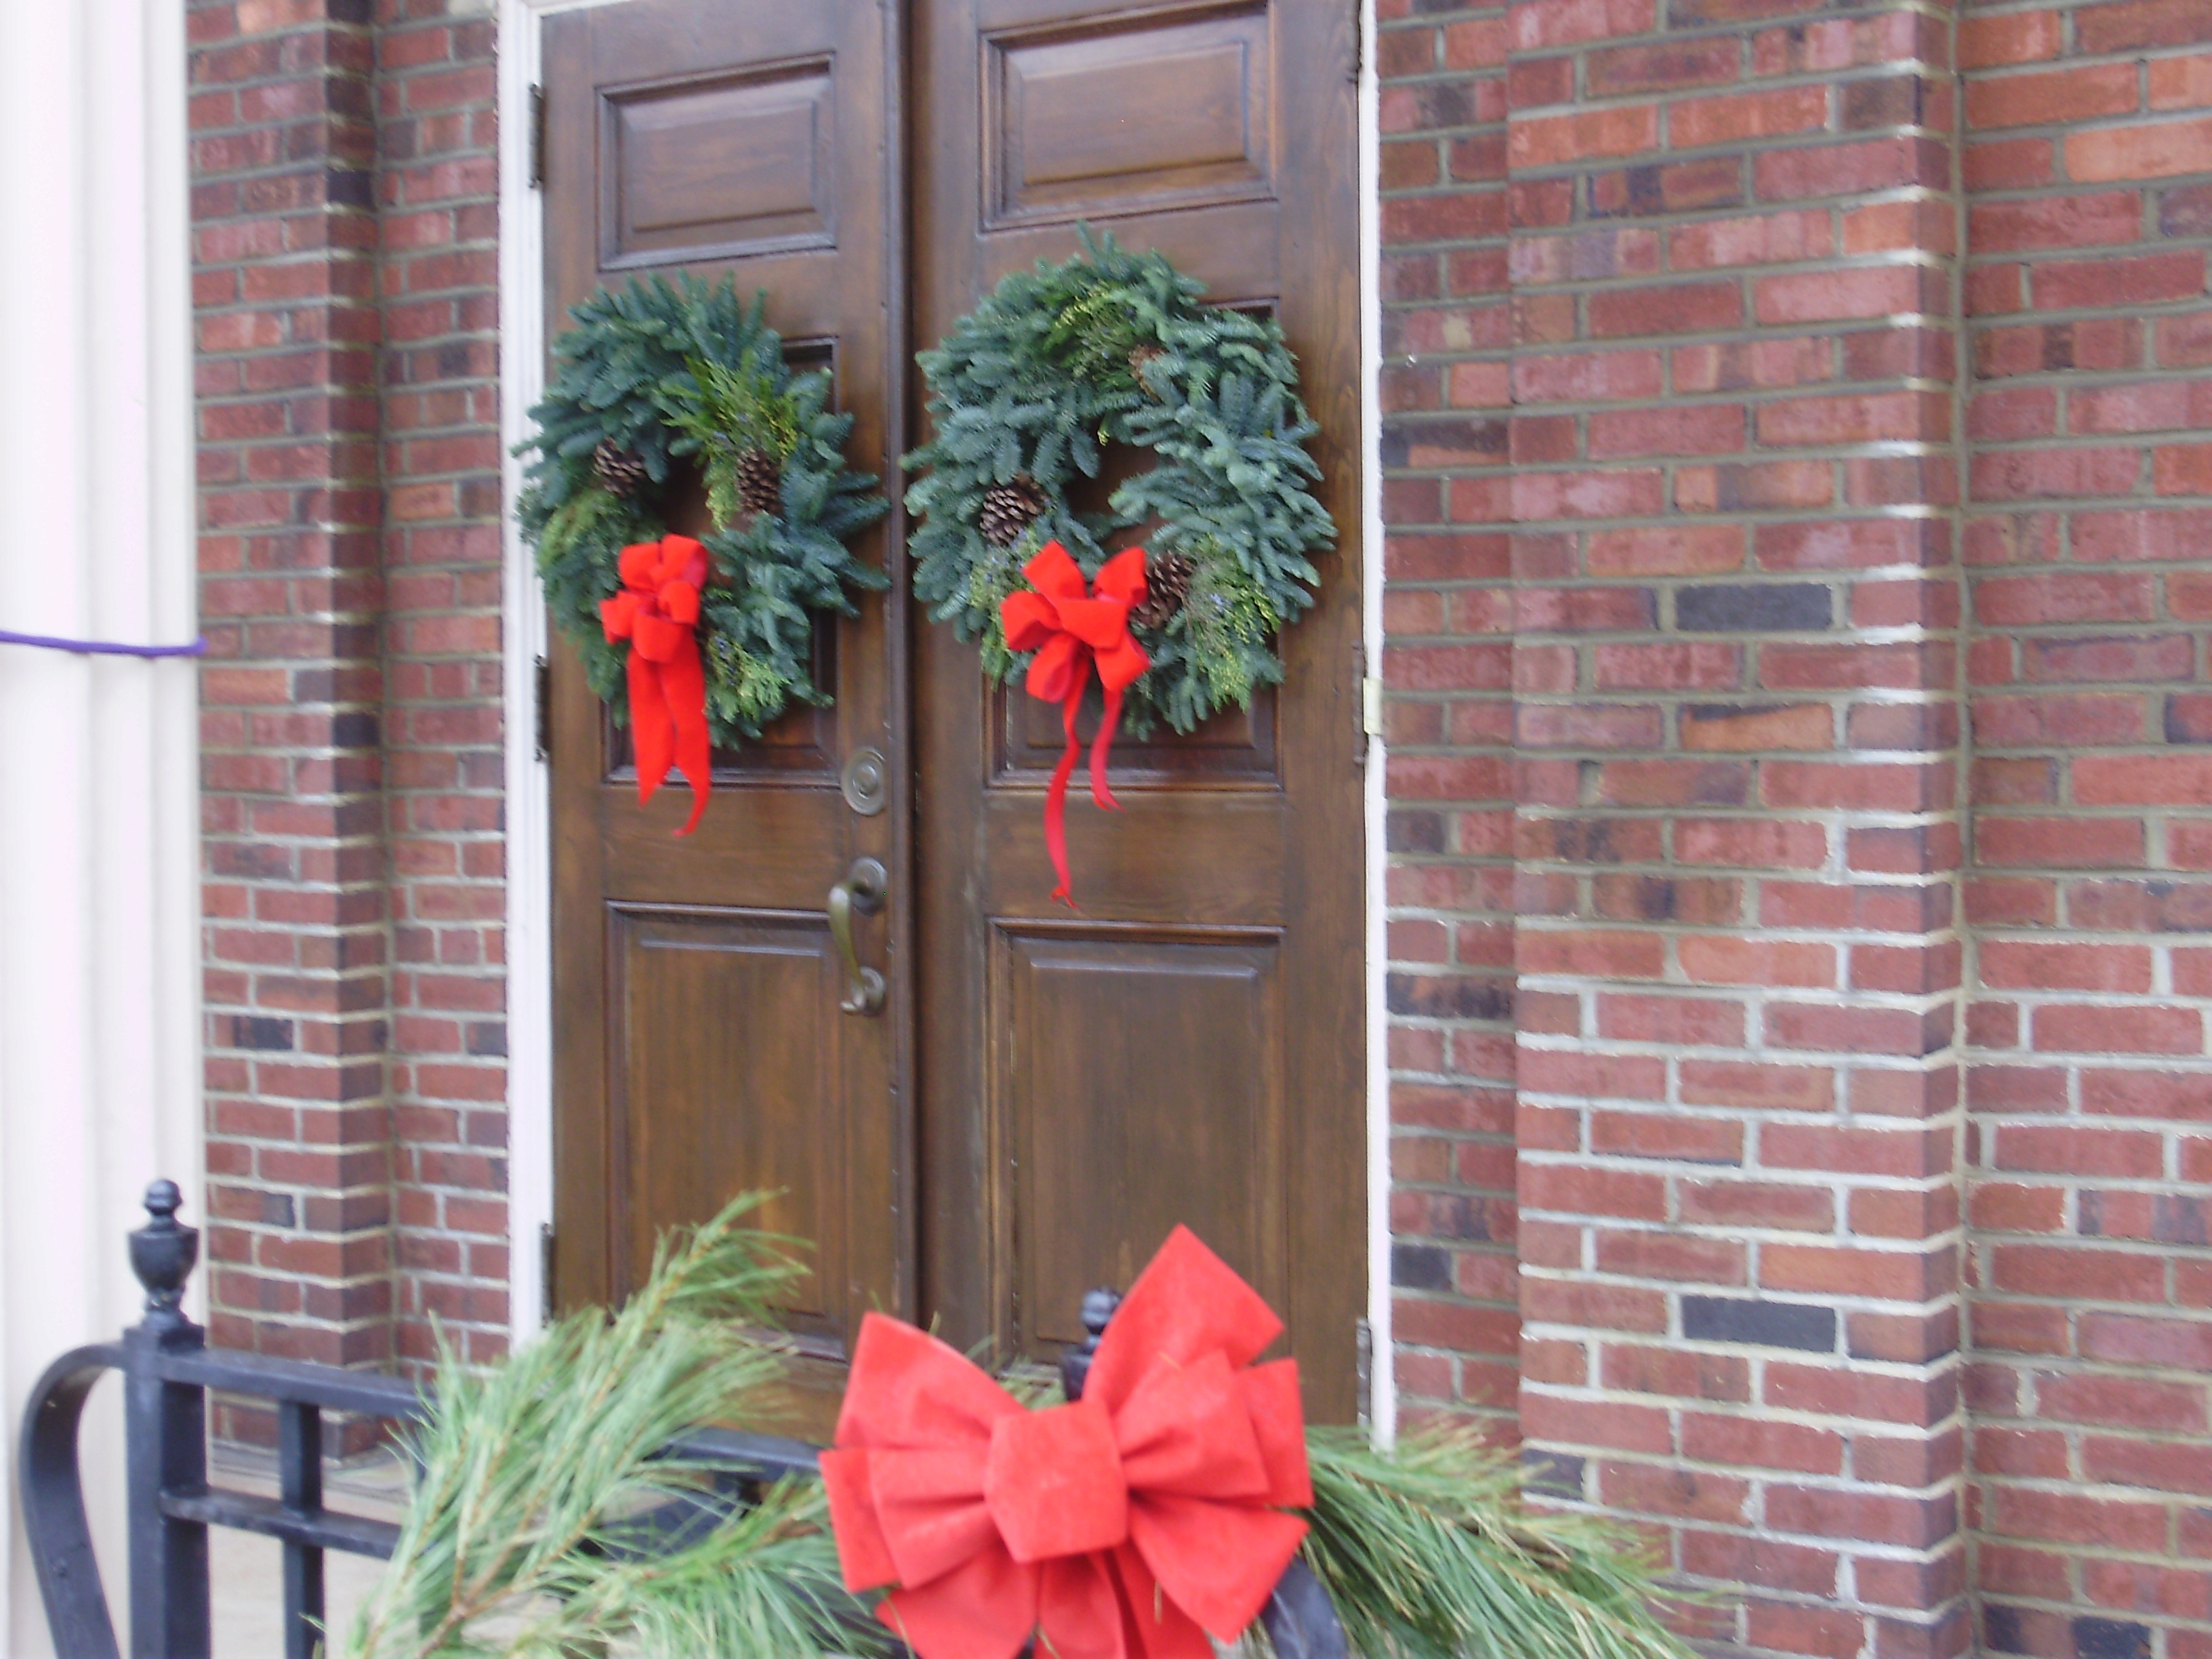 Wreaths on door